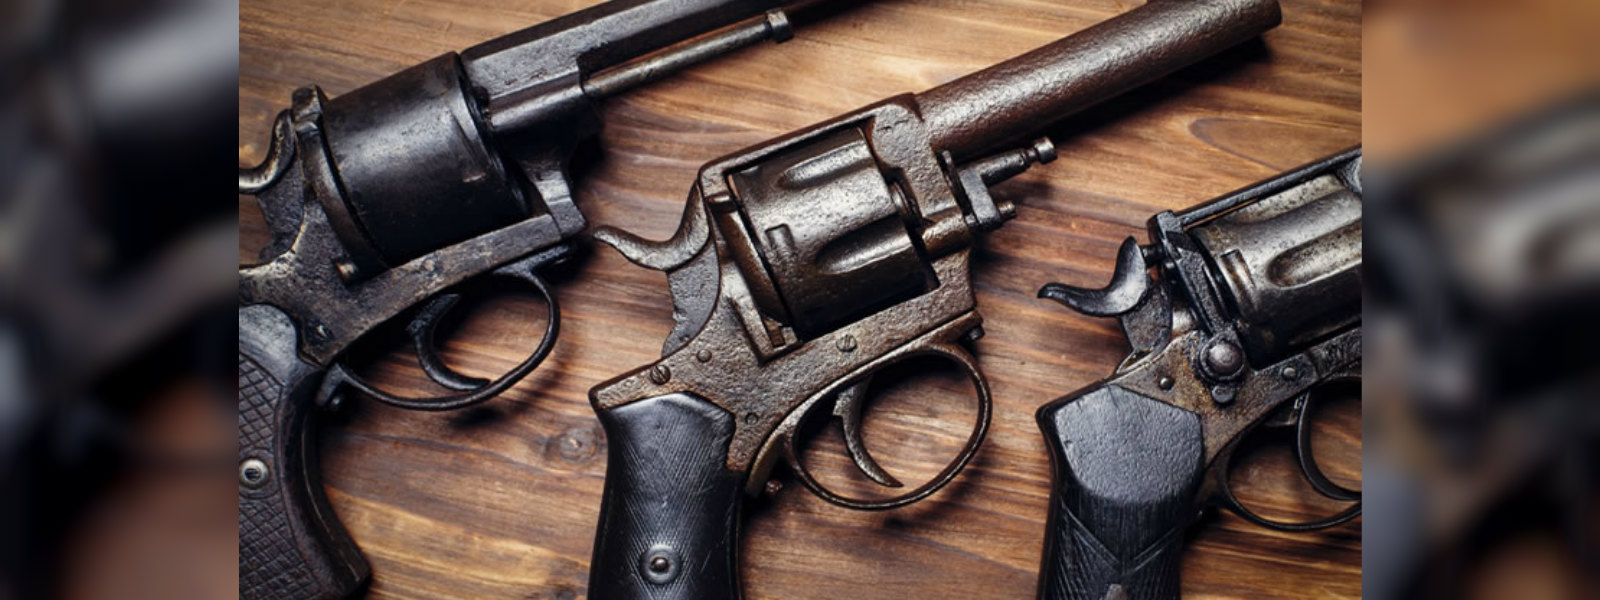 Revolver found in Hatton bus stand